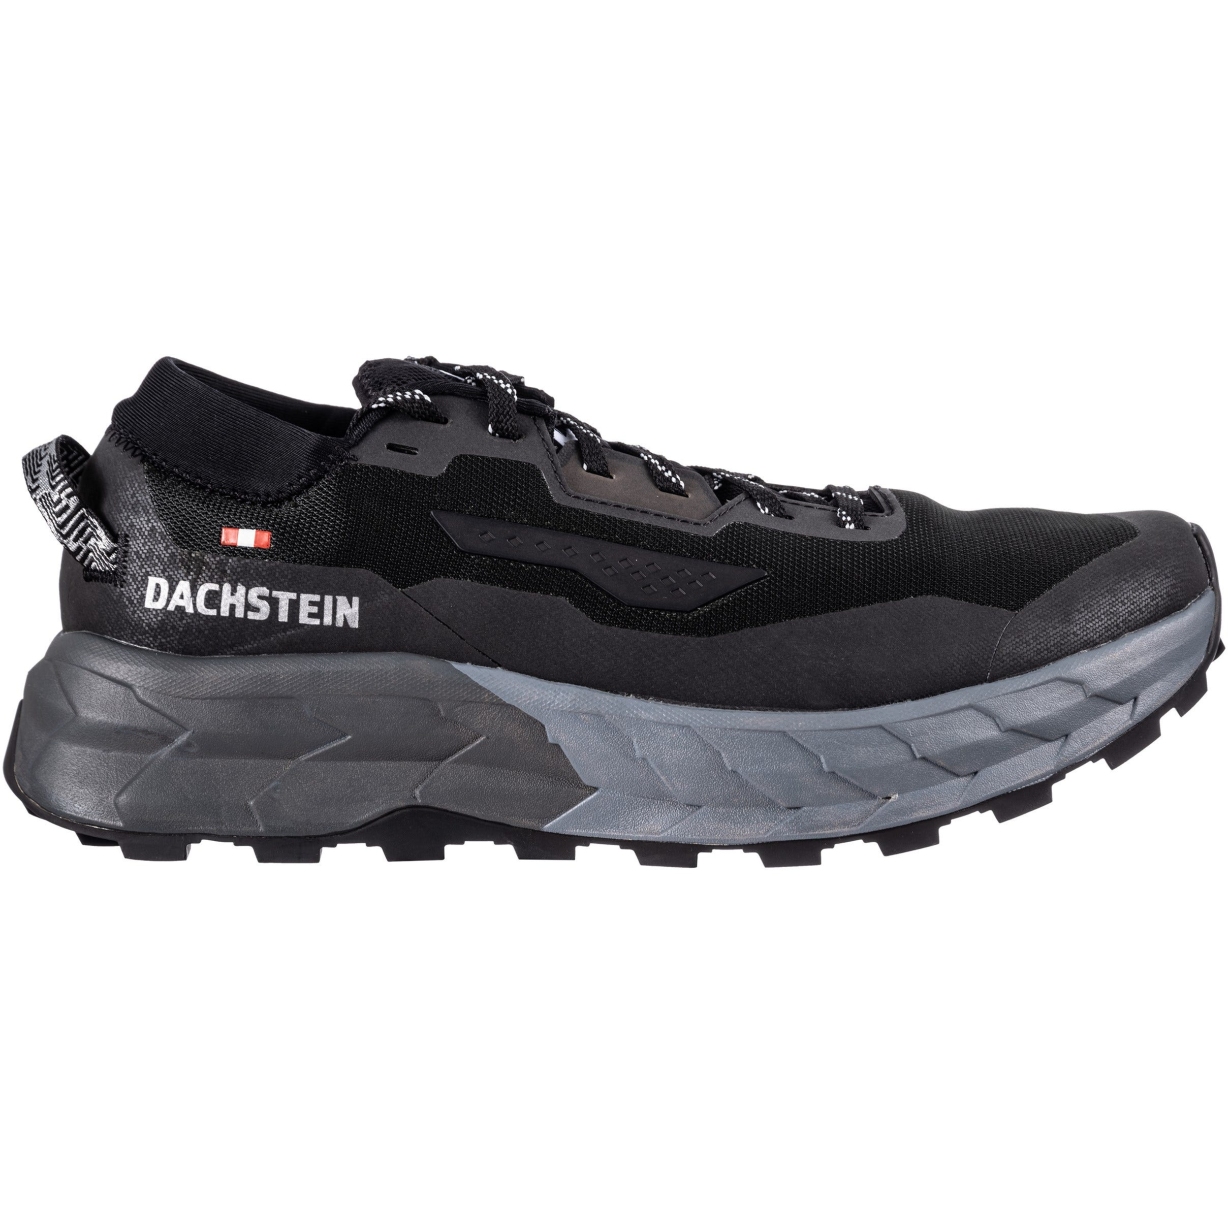 Produktbild von Dachstein X-Trail 01 Speedhiking Schuhe - schwarz